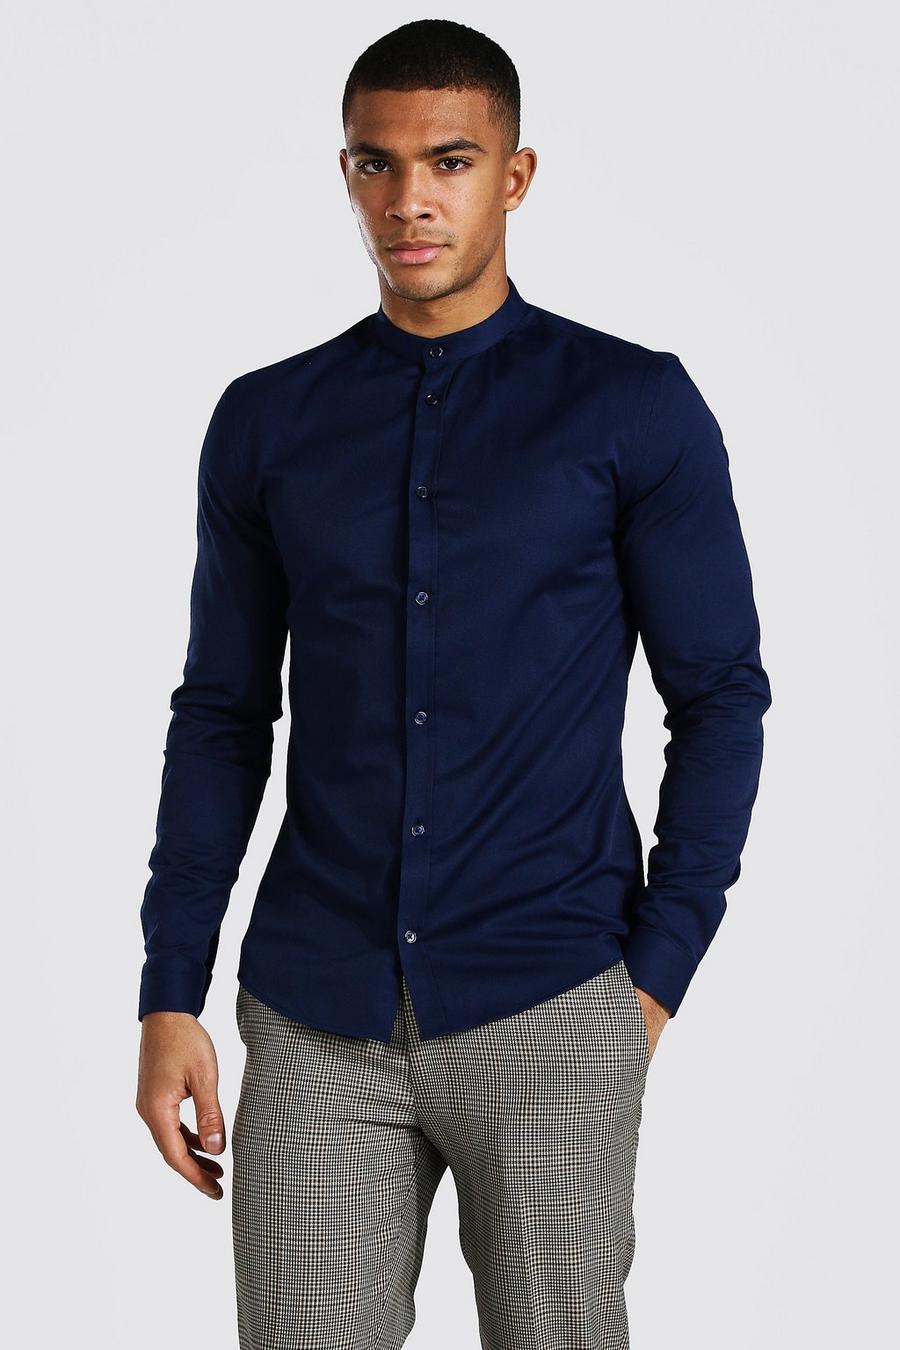 Men's Long  BARAT Slub Jersey Sleeve Grandad Collar Casual Top Cotton Rich By So 